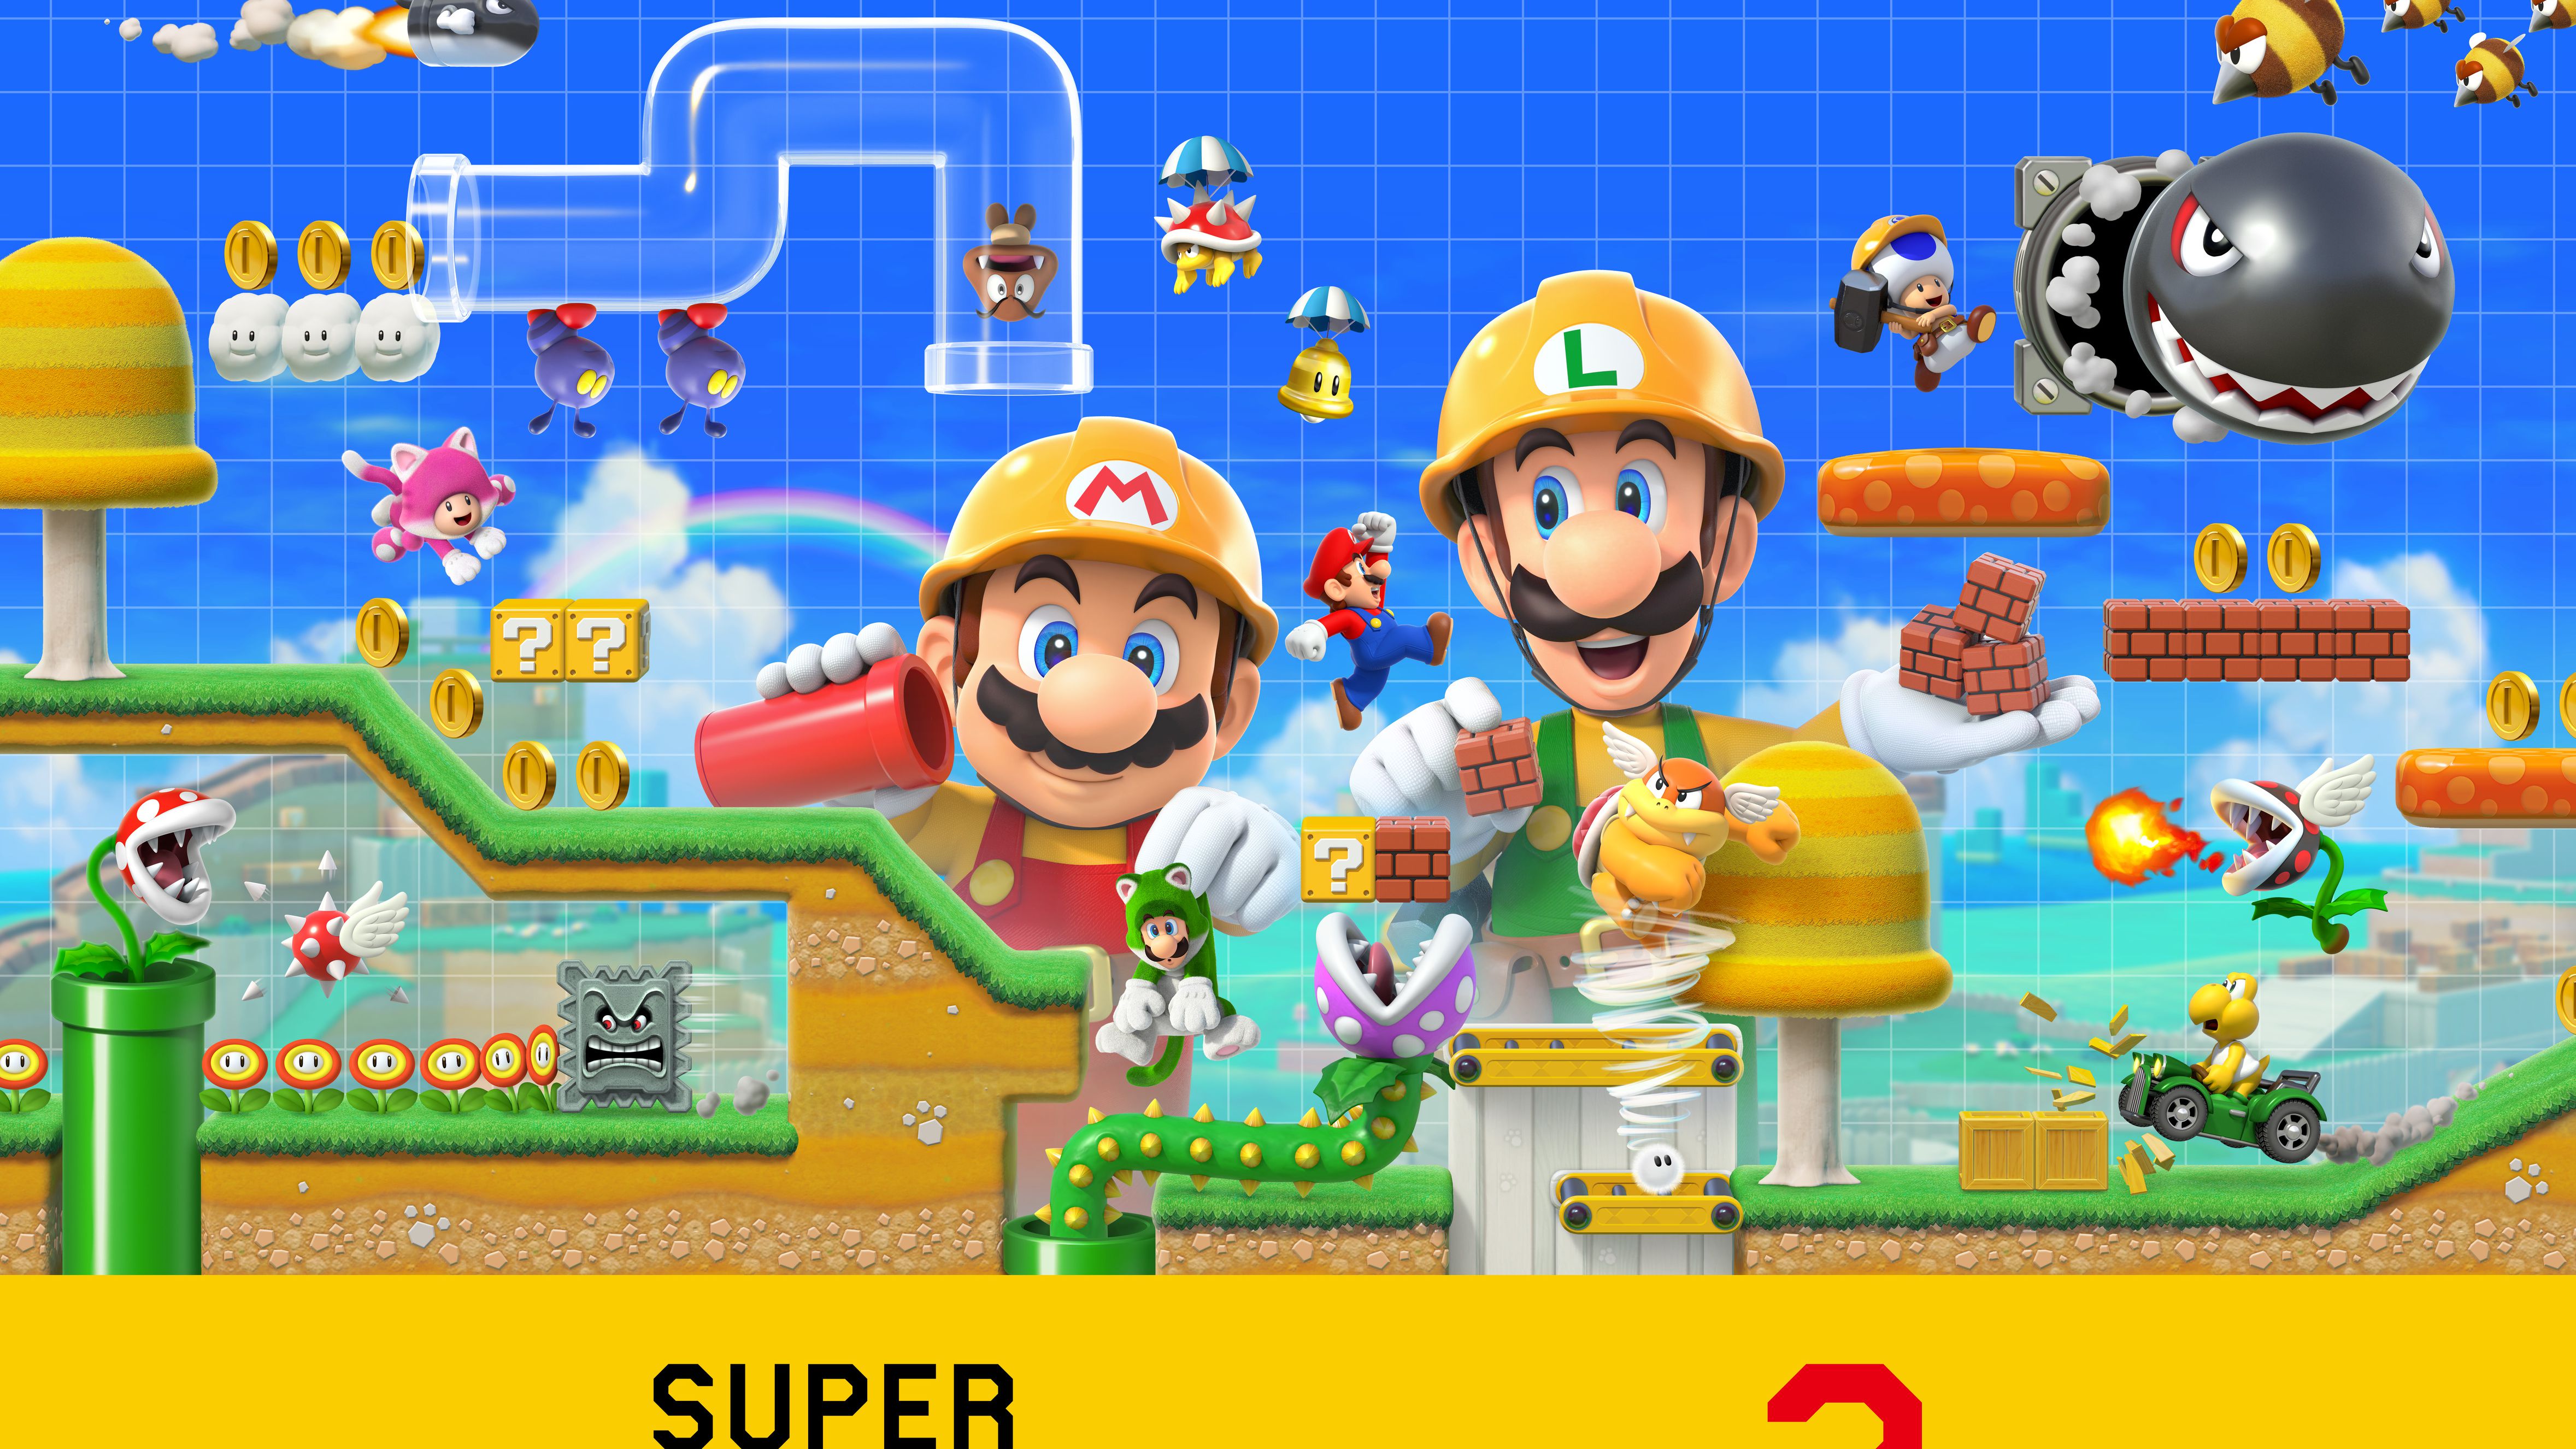 Visão  Nintendo revela detalhes sobre Super Mario Maker 2